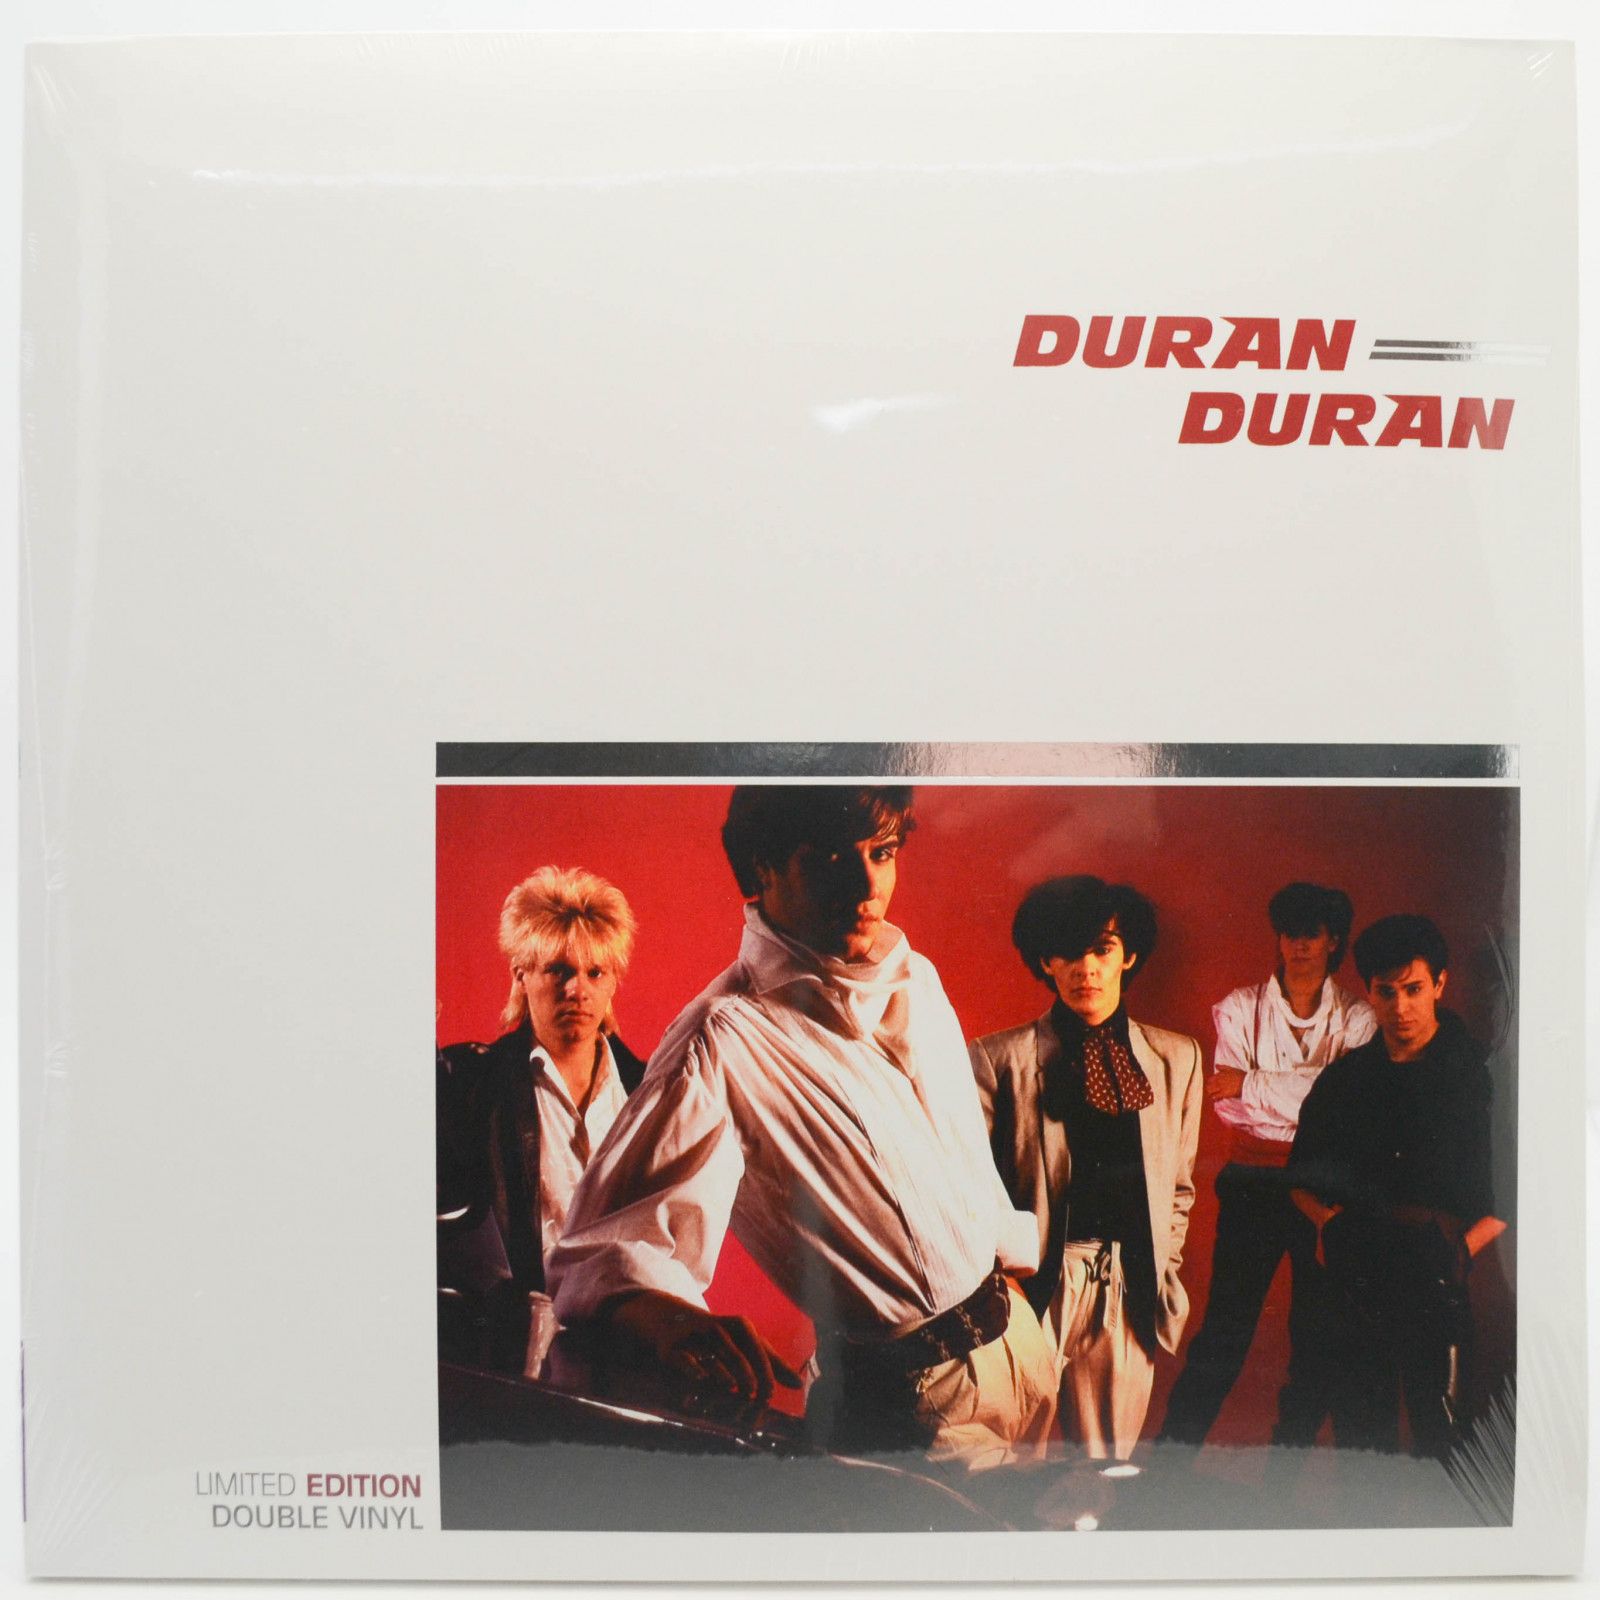 Duran Duran — Duran Duran (2LP), 1981